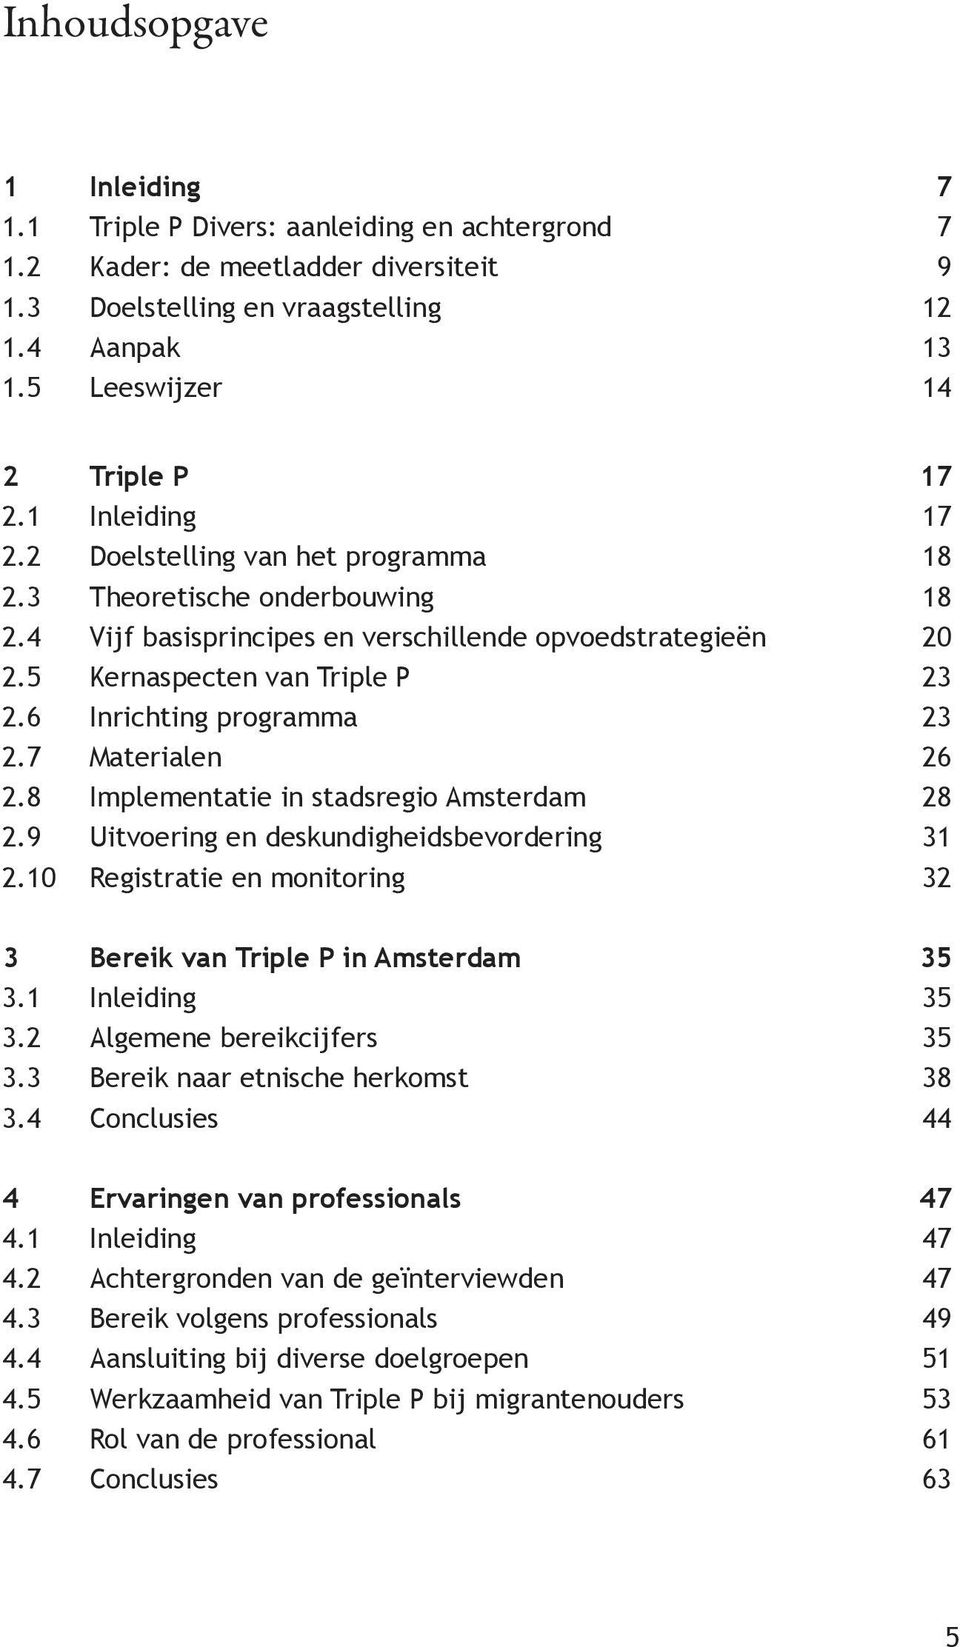 5 Kernaspecten van Triple P 23 2.6 Inrichting programma 23 2.7 Materialen 26 2.8 Implementatie in stadsregio Amsterdam 28 2.9 Uitvoering en deskundigheidsbevordering 31 2.